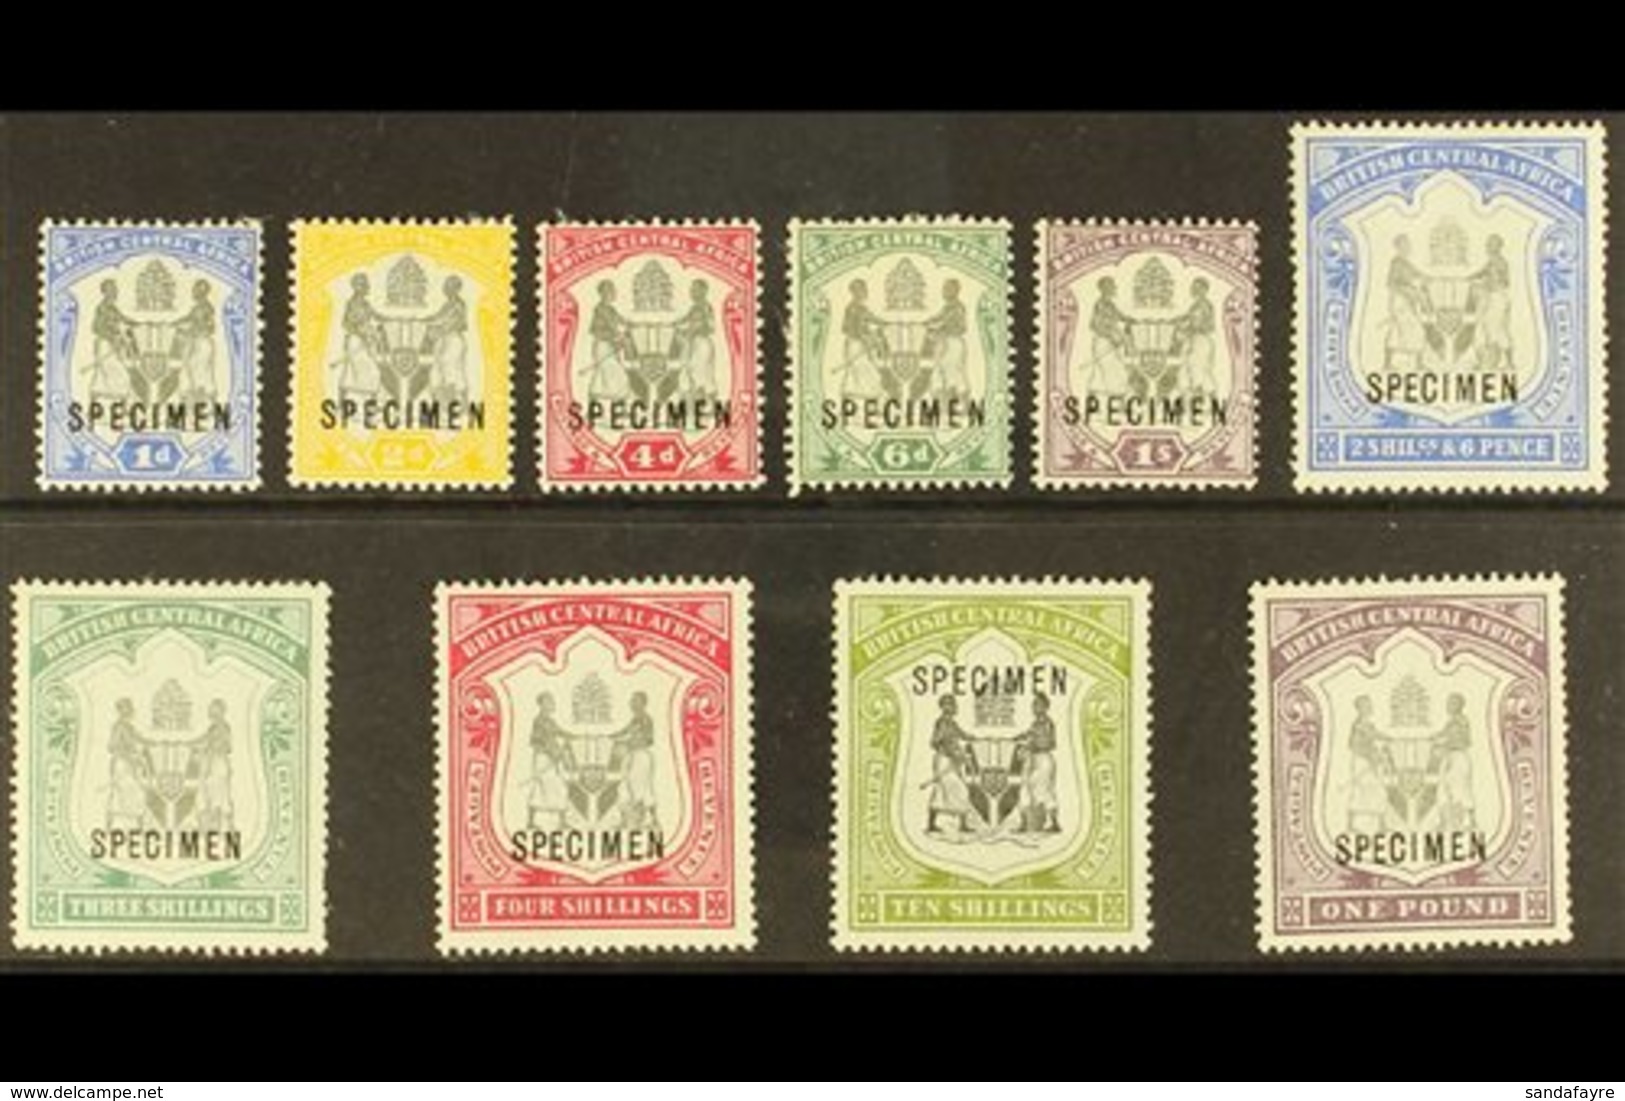 \Y 1897-00\Y Set Complete Opt'd "SPECIMEN", SG 43s/51s, Mint Part OG, Lovely Fresh Stamps (10) For More Images, Please V - Nyassaland (1907-1953)